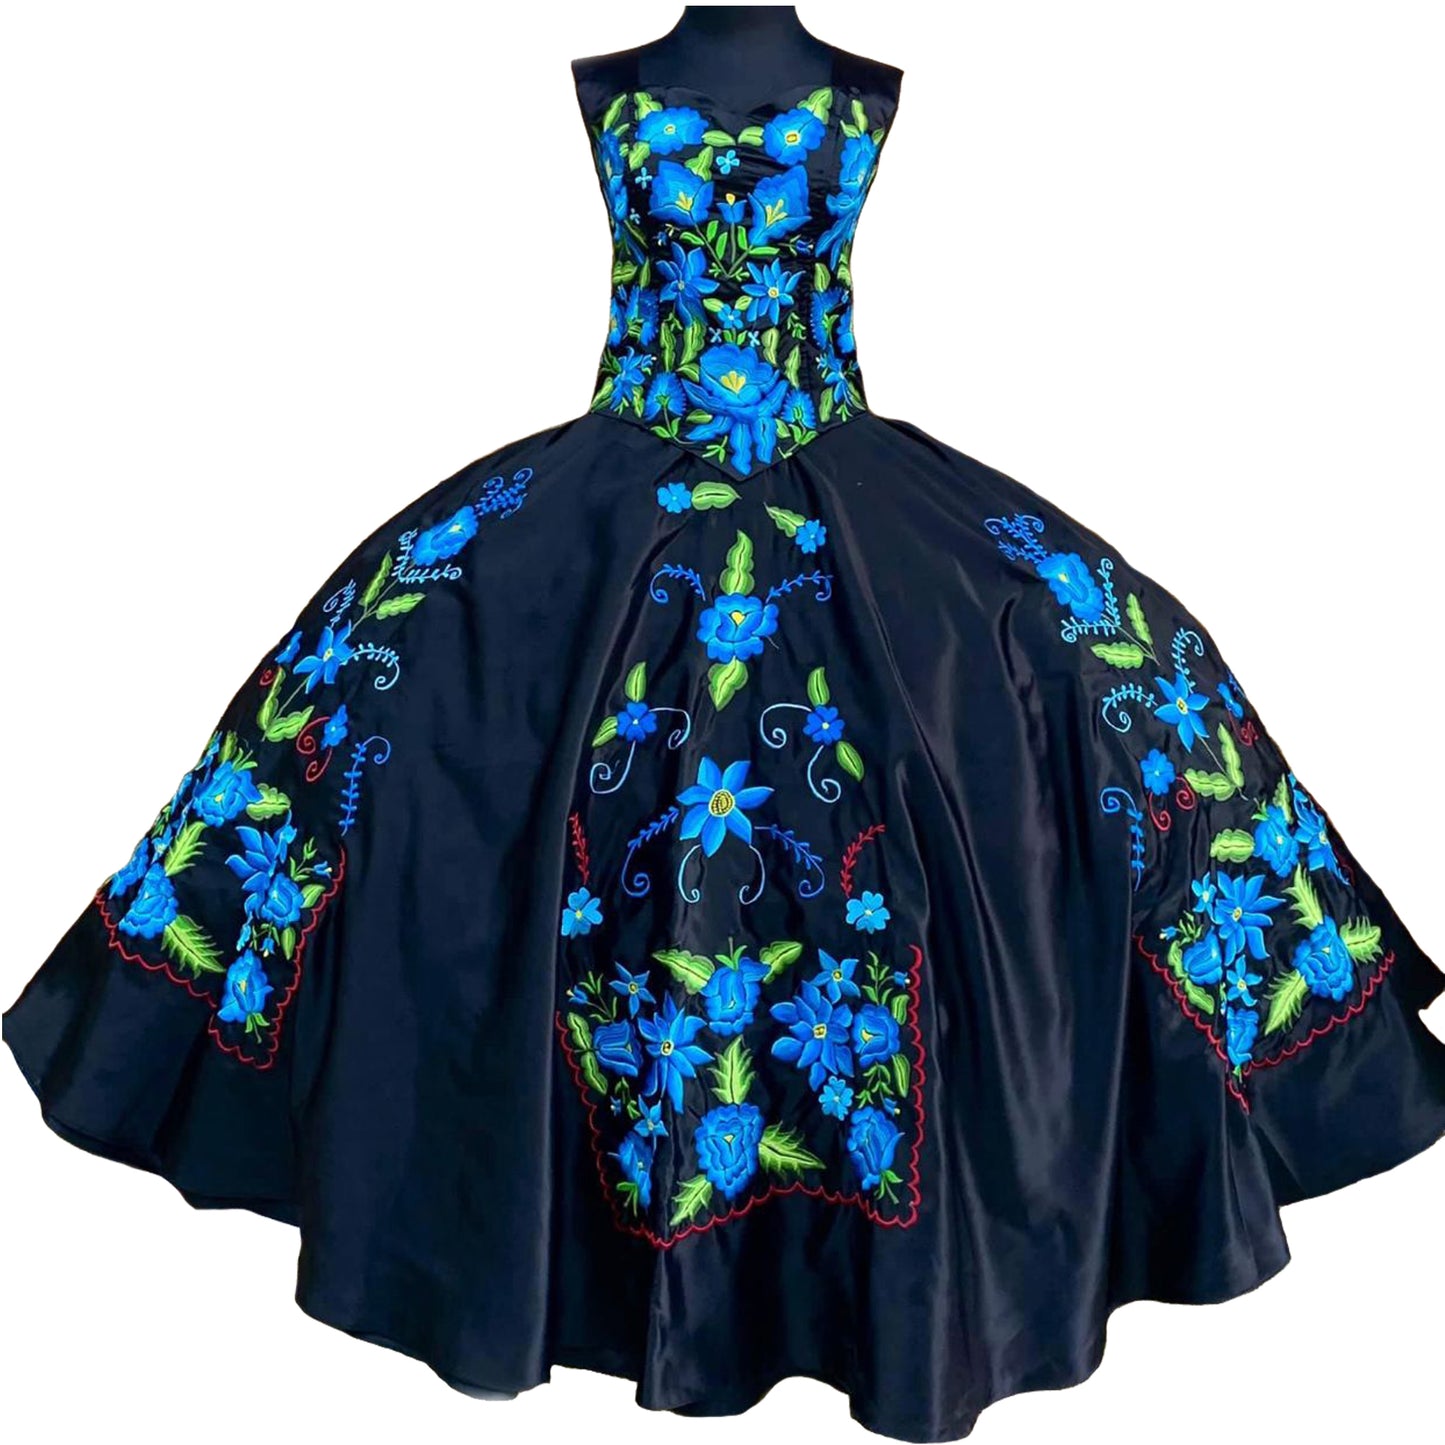 Folkloric Custom Made Dress - Blue Floral Pattern Black